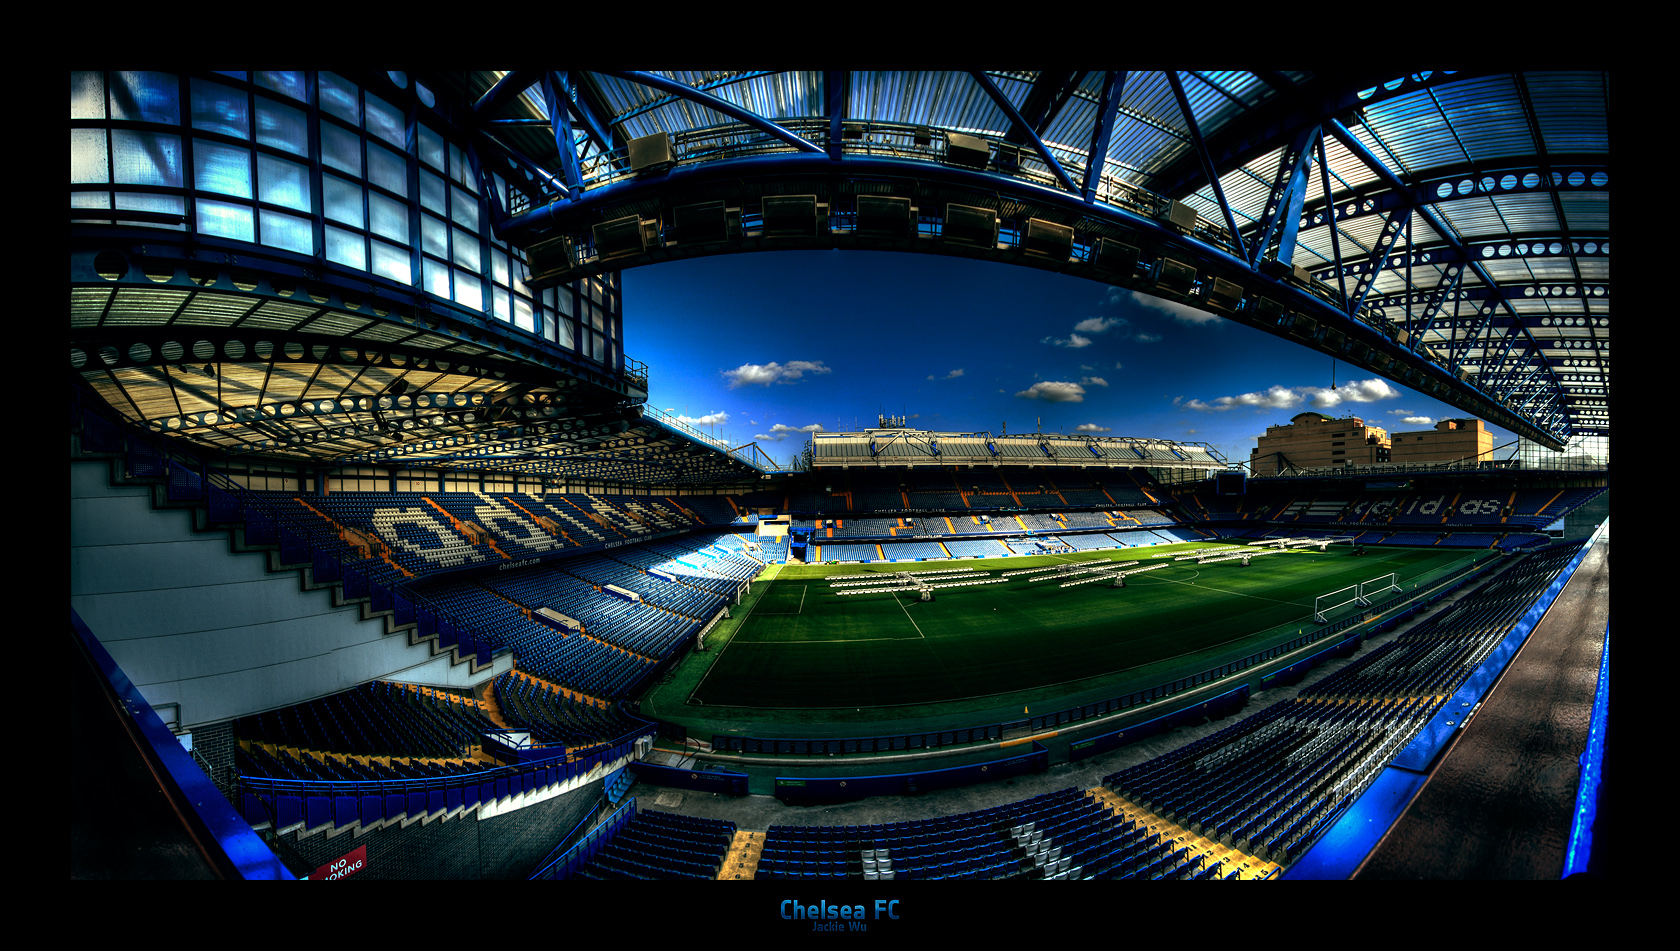 Chelsea Fc Stadium